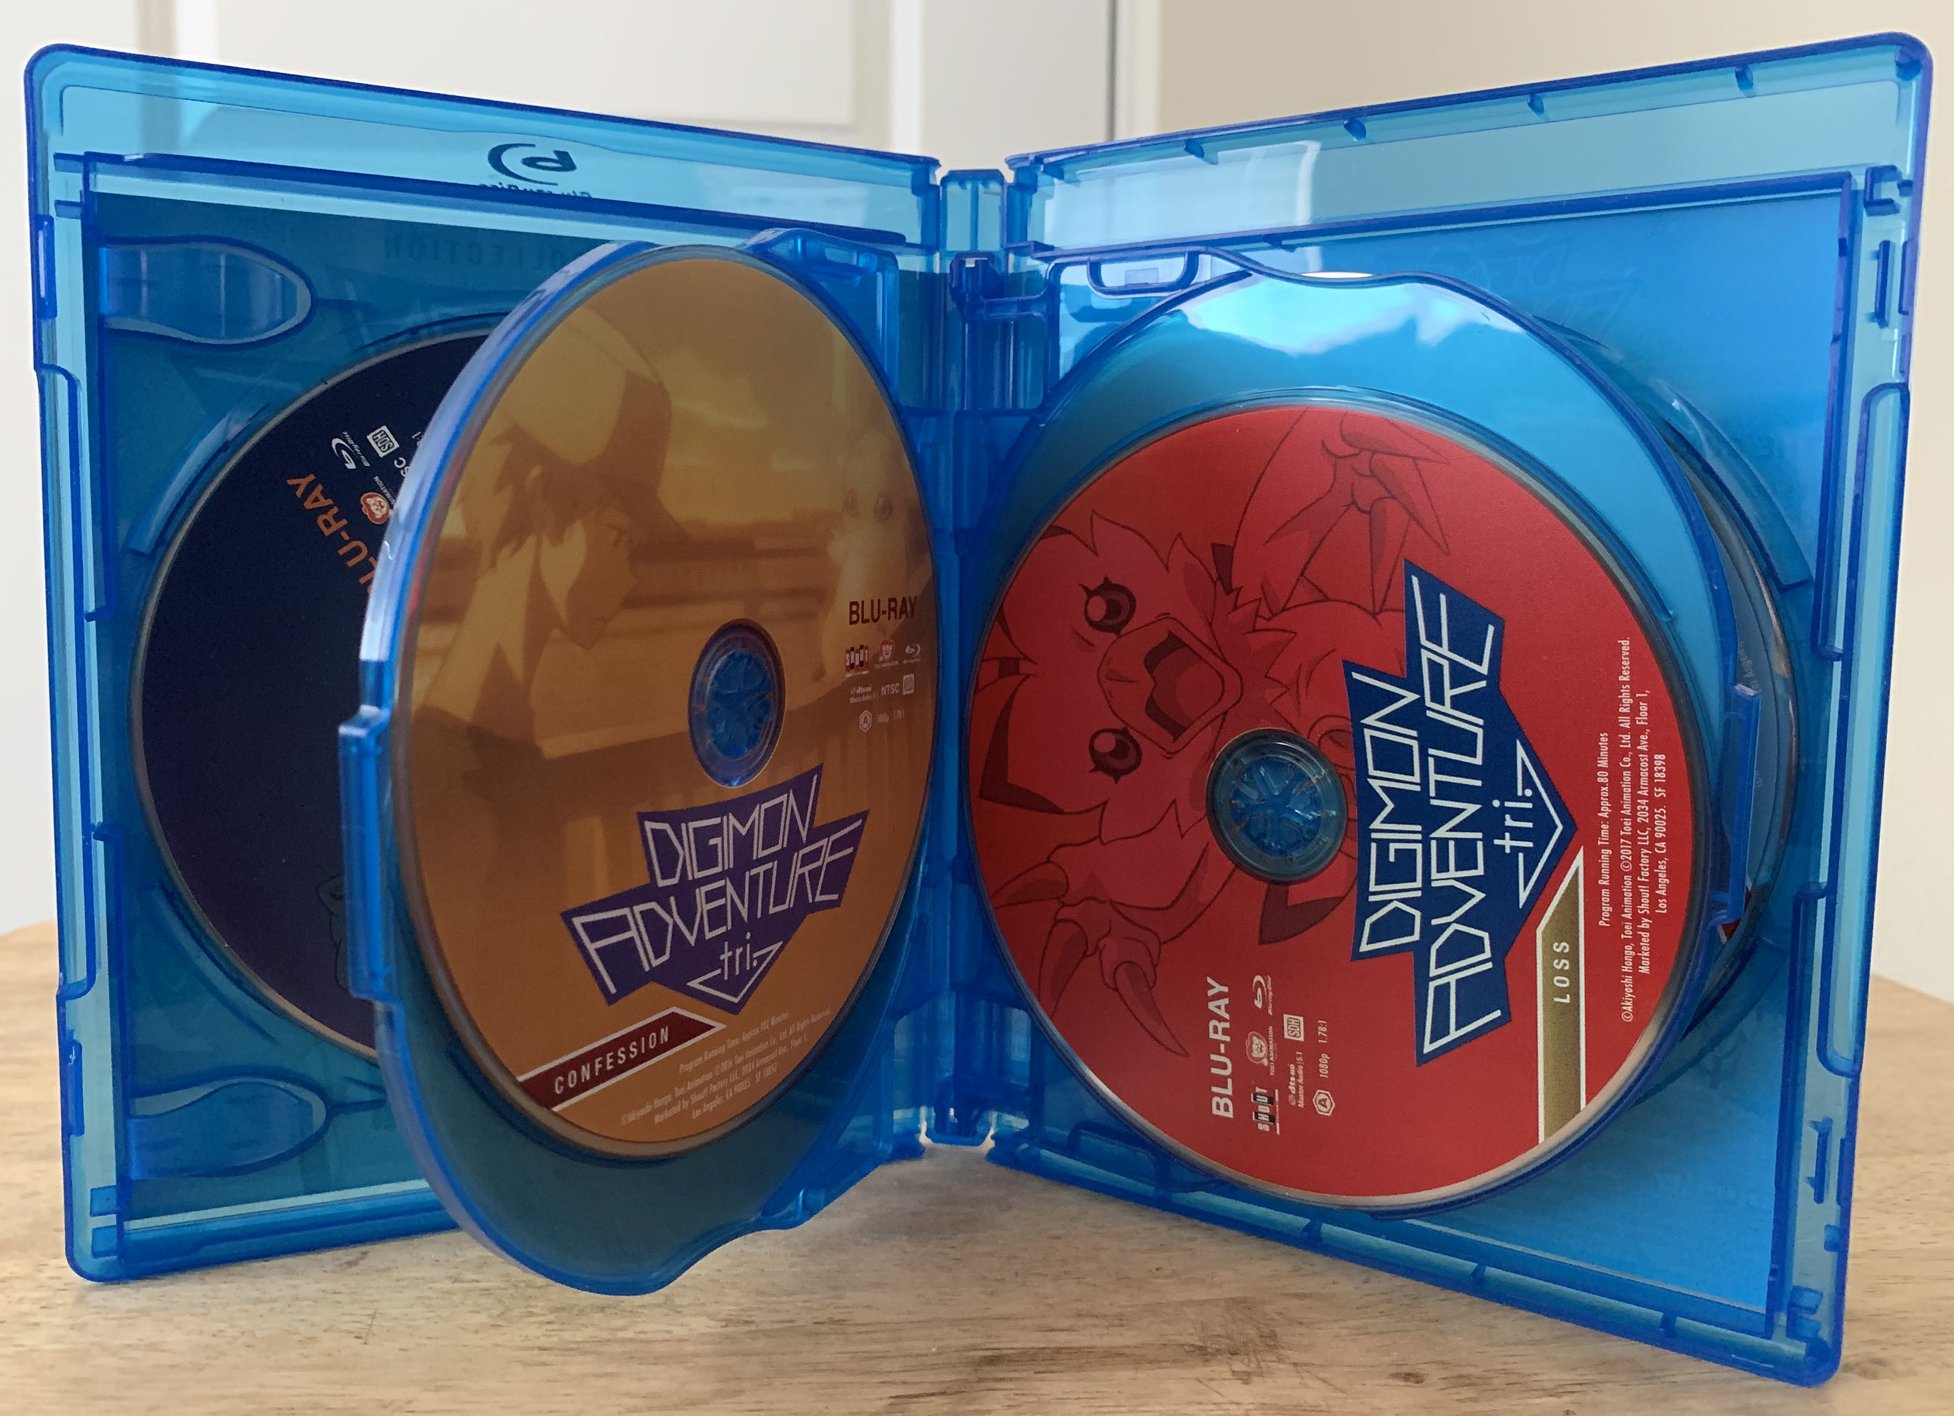 Digimon Adventure tri.: 6-Film Complete Collection